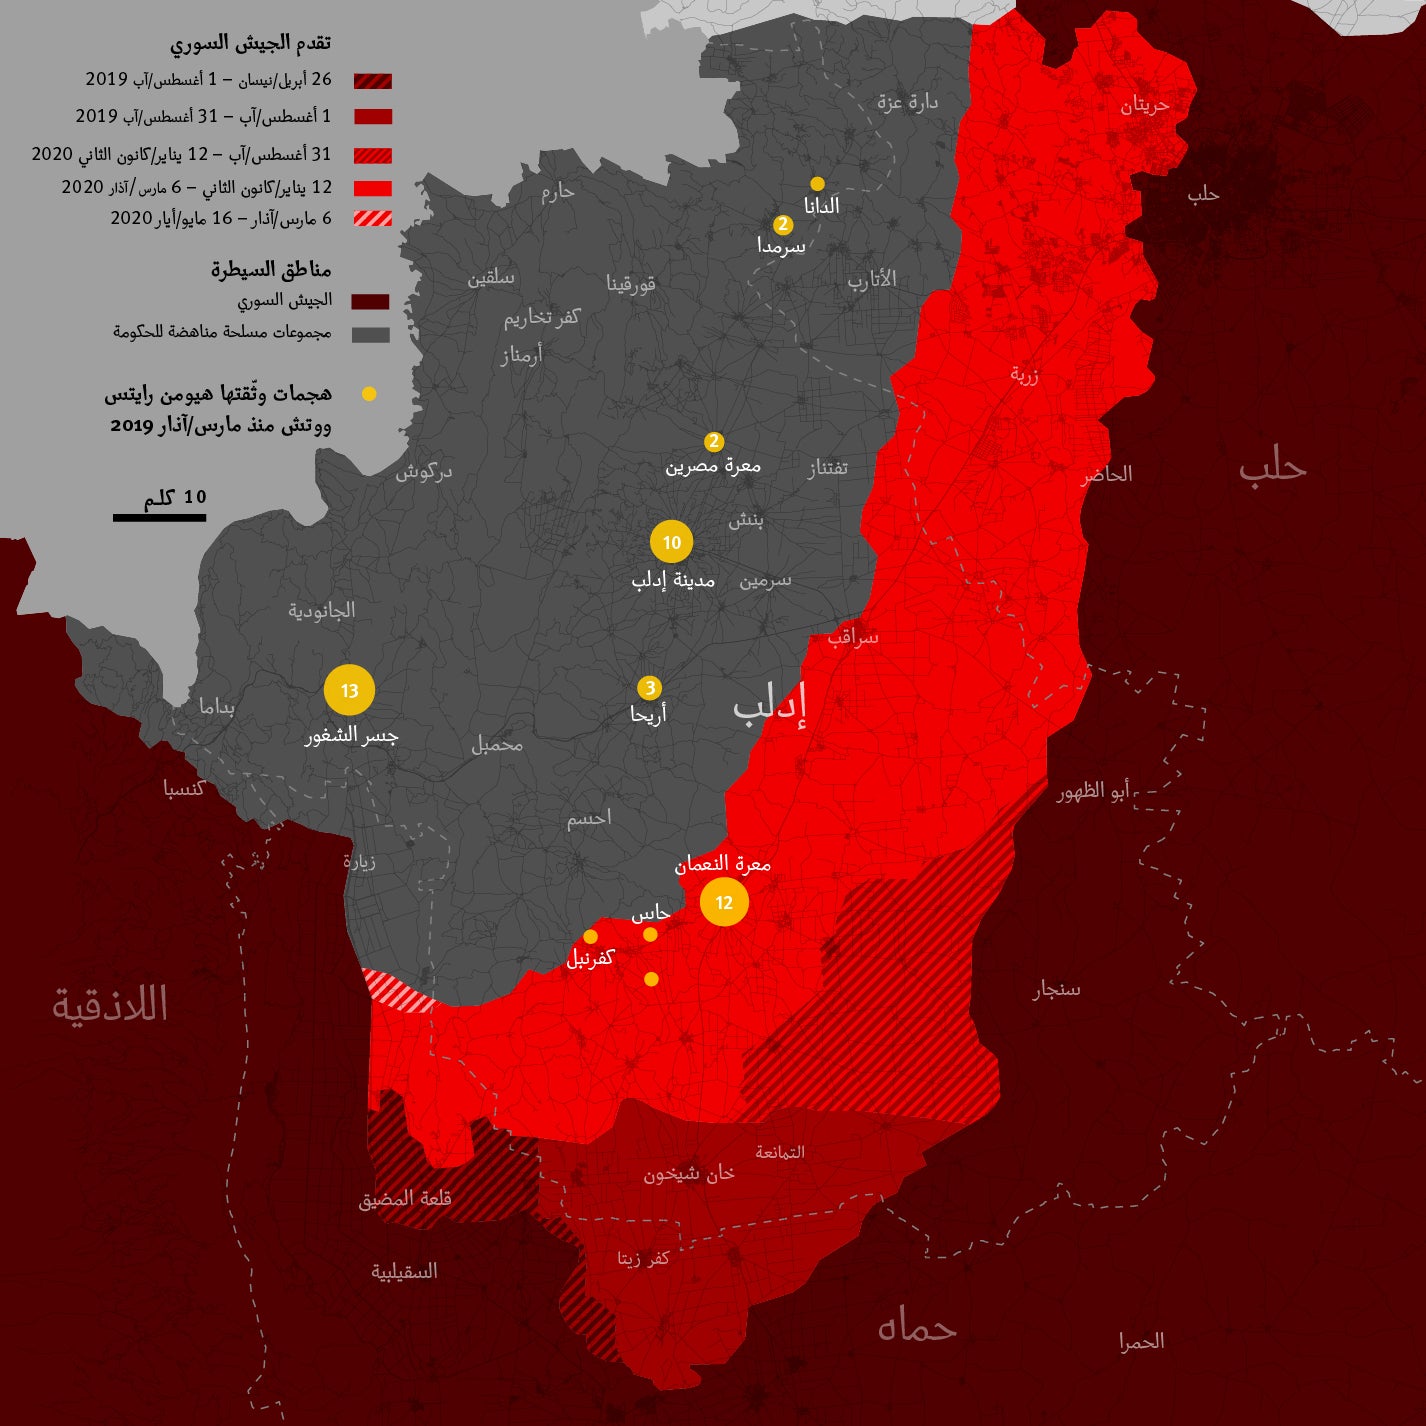 202010mena_syria_idlib_control map_ar